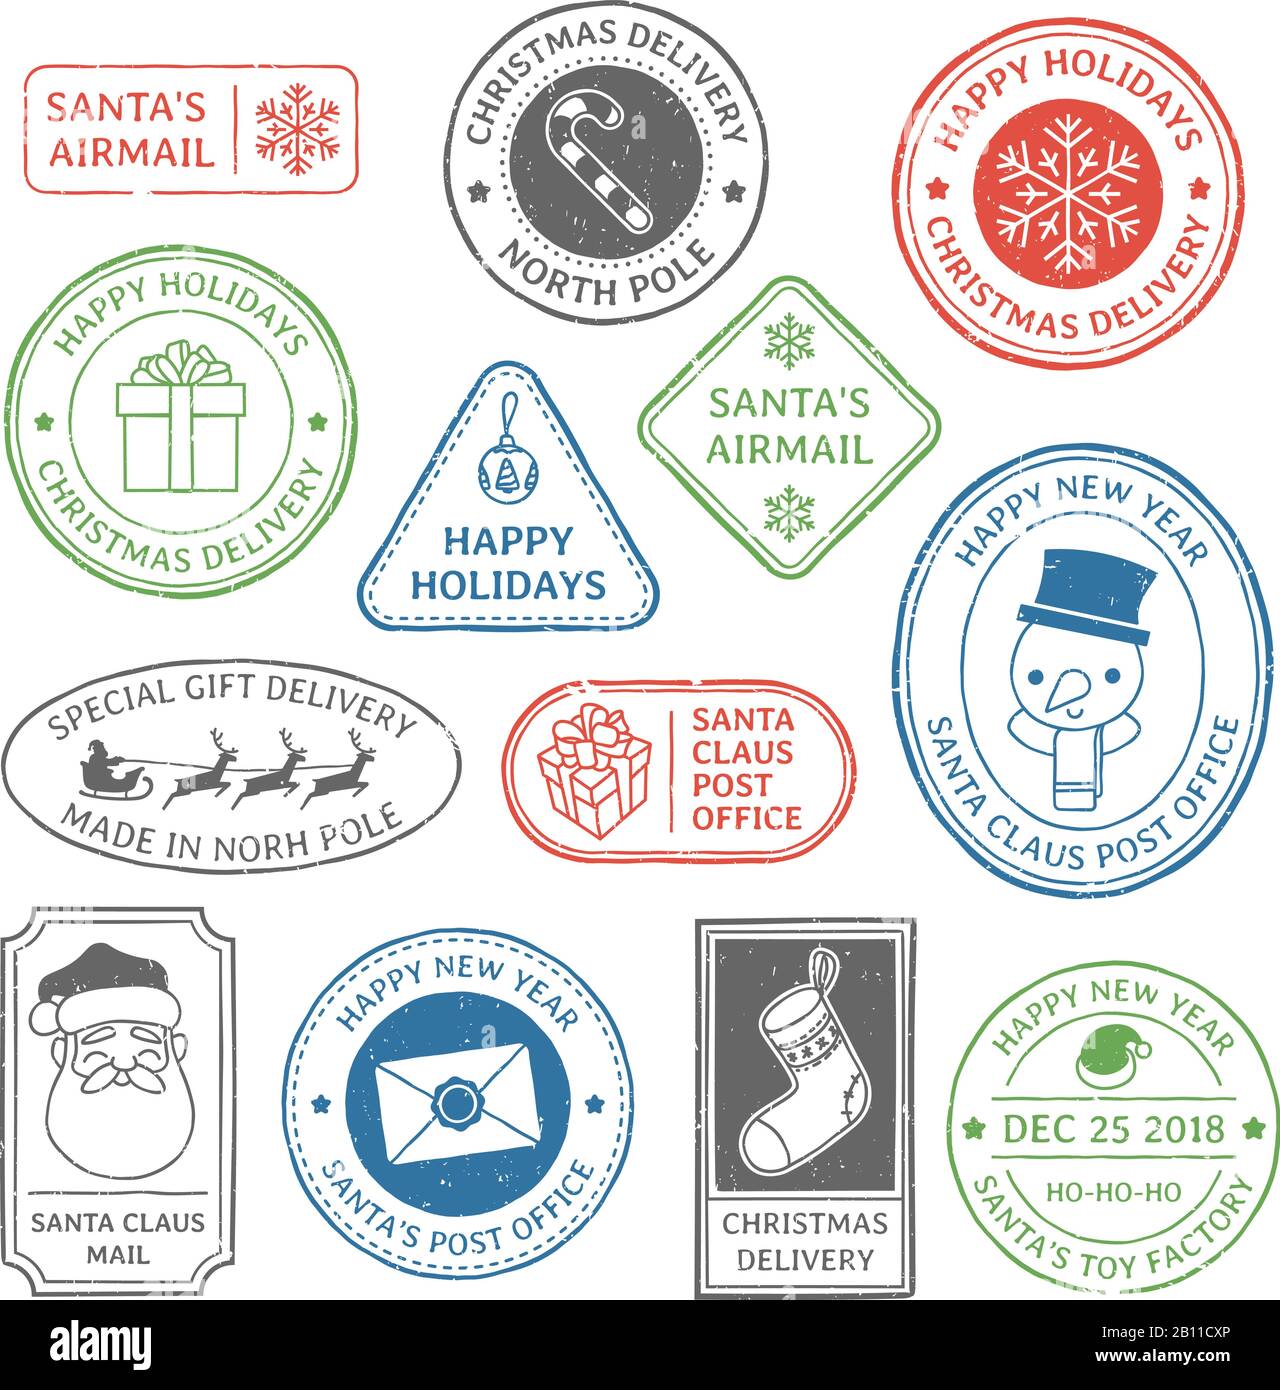 Weihnachtsmann Poststempel. Weihnachtsbriefmarken, Poststempel Nordpol und Postwertzeichen Weihnachtskarte Etikett Vektor gesetzt Stock Vektor